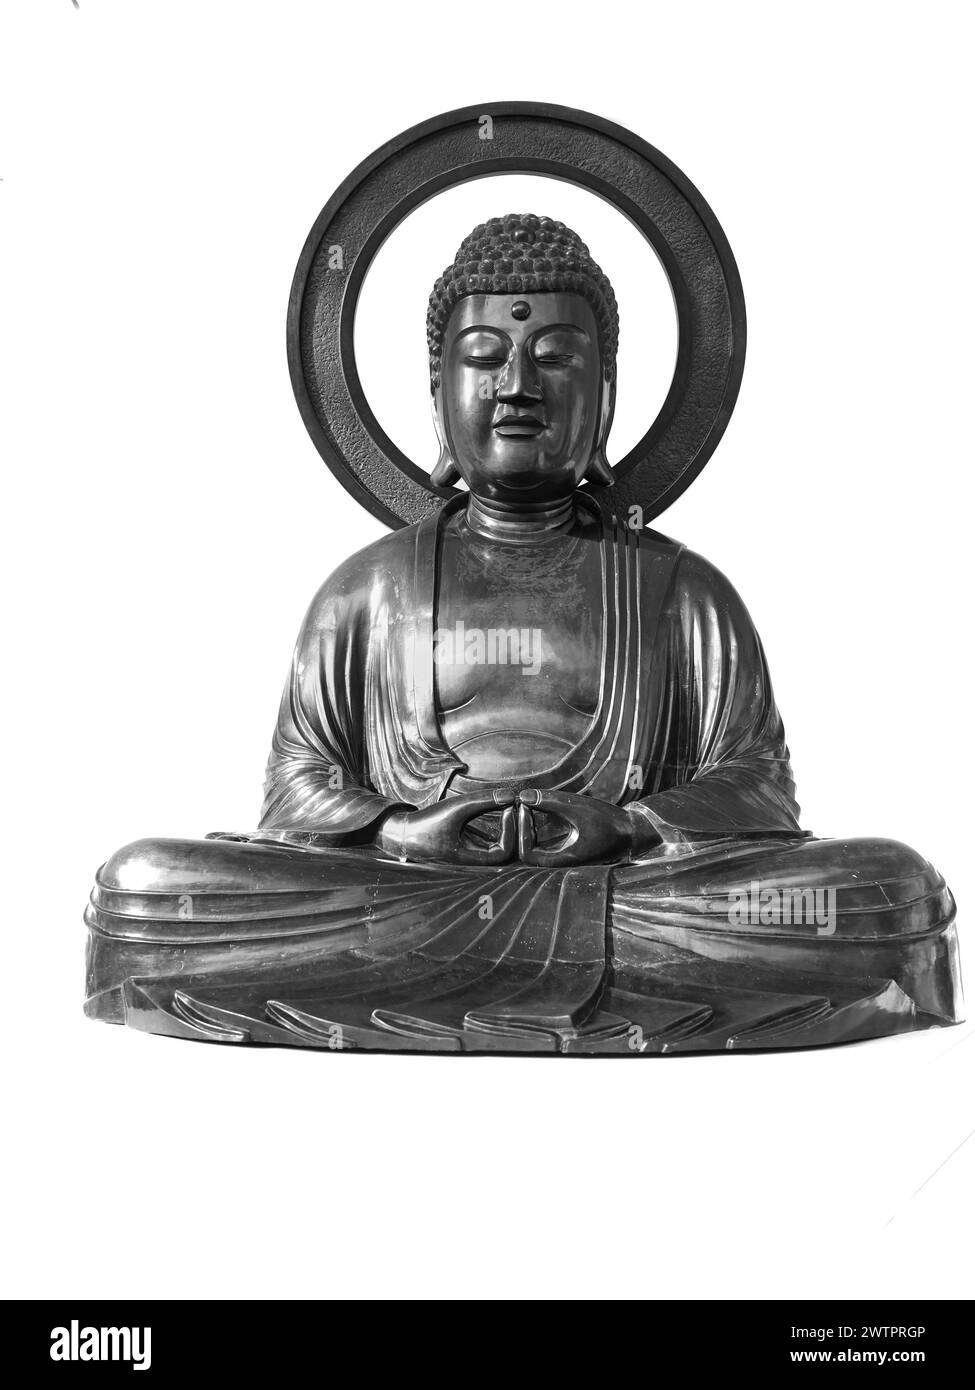 Estatua de bronce del Buda Amida (Escuela de Budismo de Tierra Pura), Museo Nacional de Escocia, Edimburgo. Foto de stock